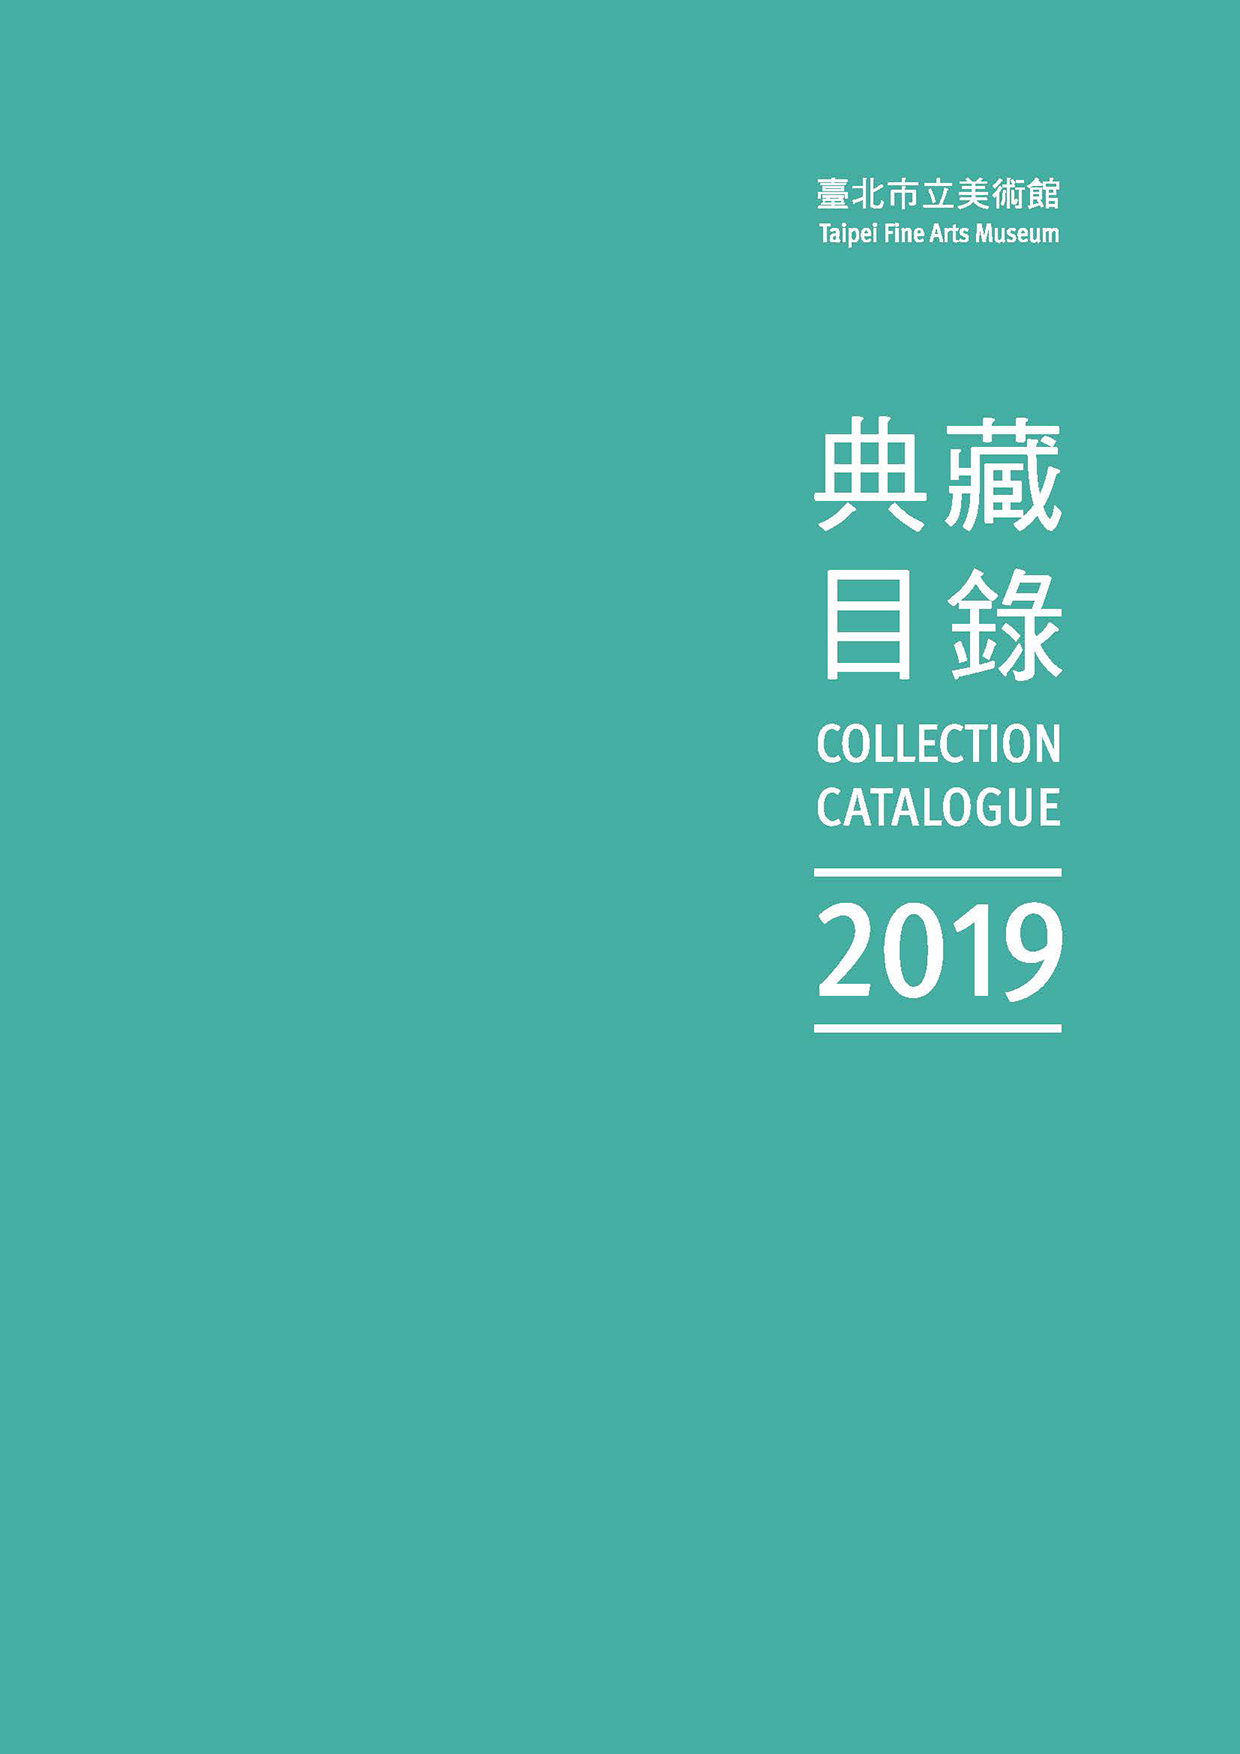 臺北市立美術館典藏目錄108(2019) 的圖說